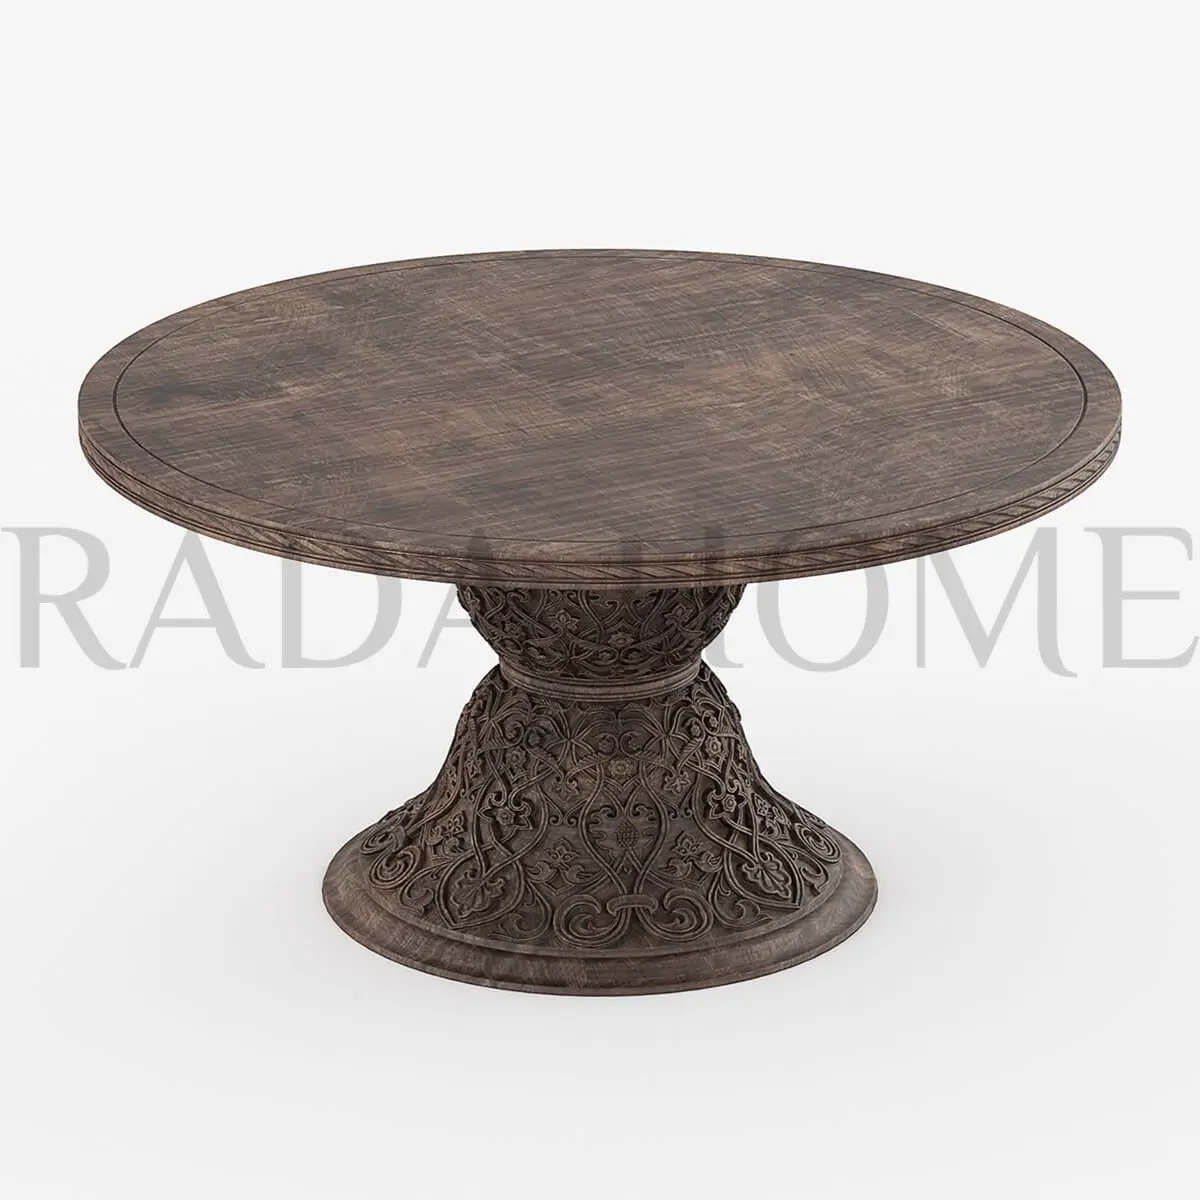 Tisch Massivholz runder Esstisch Luxus Innen möbel von indischen direkten Hersteller zum Großhandels preis